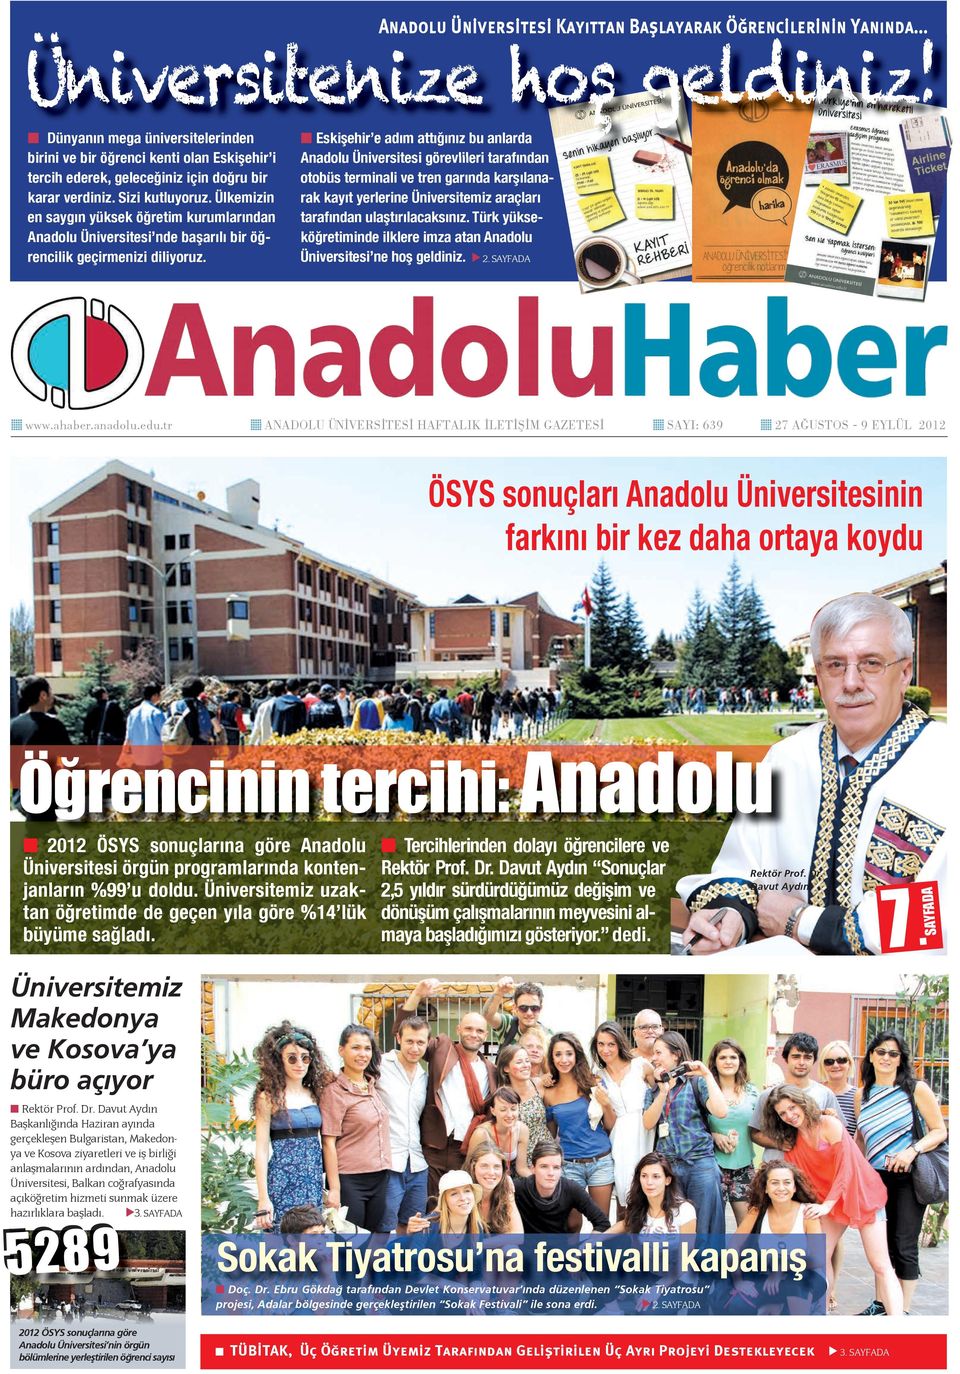 Ülkemizin en saygın yüksek öğretim kurumlarından Anadolu Üniversitesi nde başarılı bir öğrencilik geçirmenizi diliyoruz. www.ahaber.anadolu.edu.